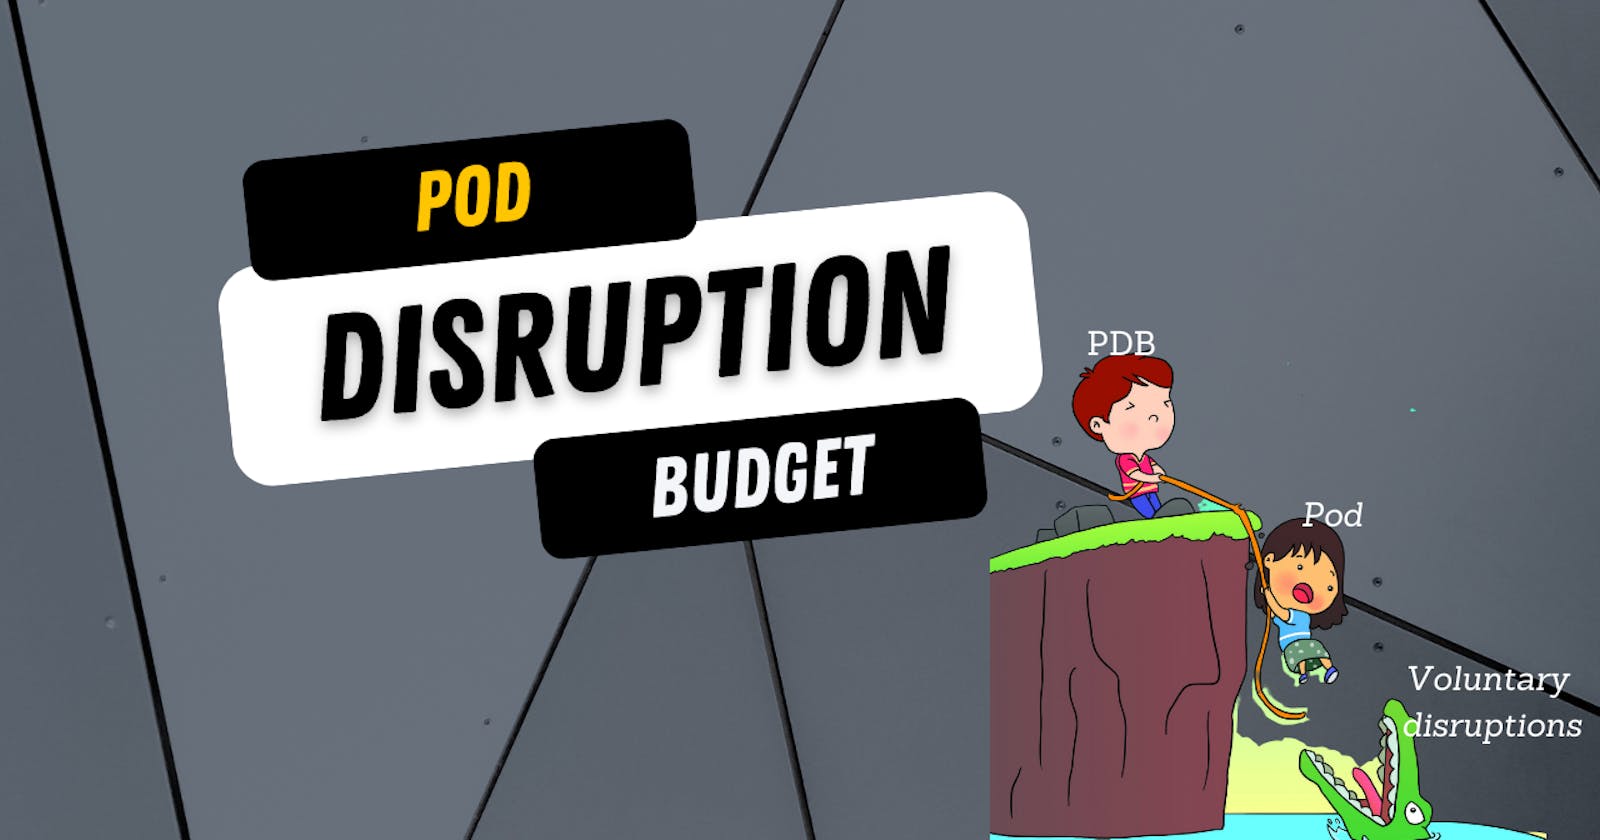 Pod Disruption Budget(Pdb)